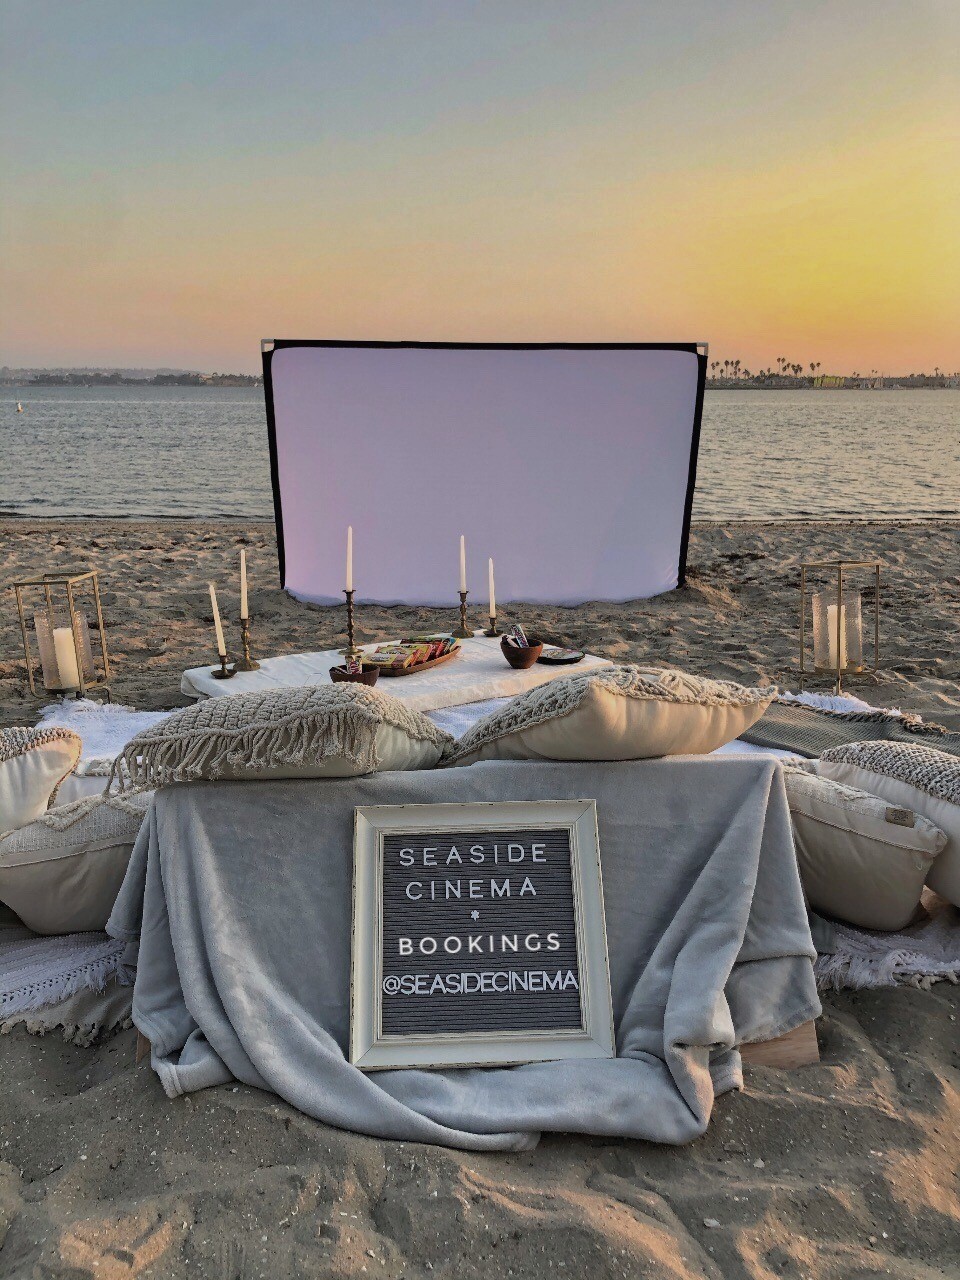 San Diego Valentine's Day Ideas - Drive-in movie theatre Seaside Cinema